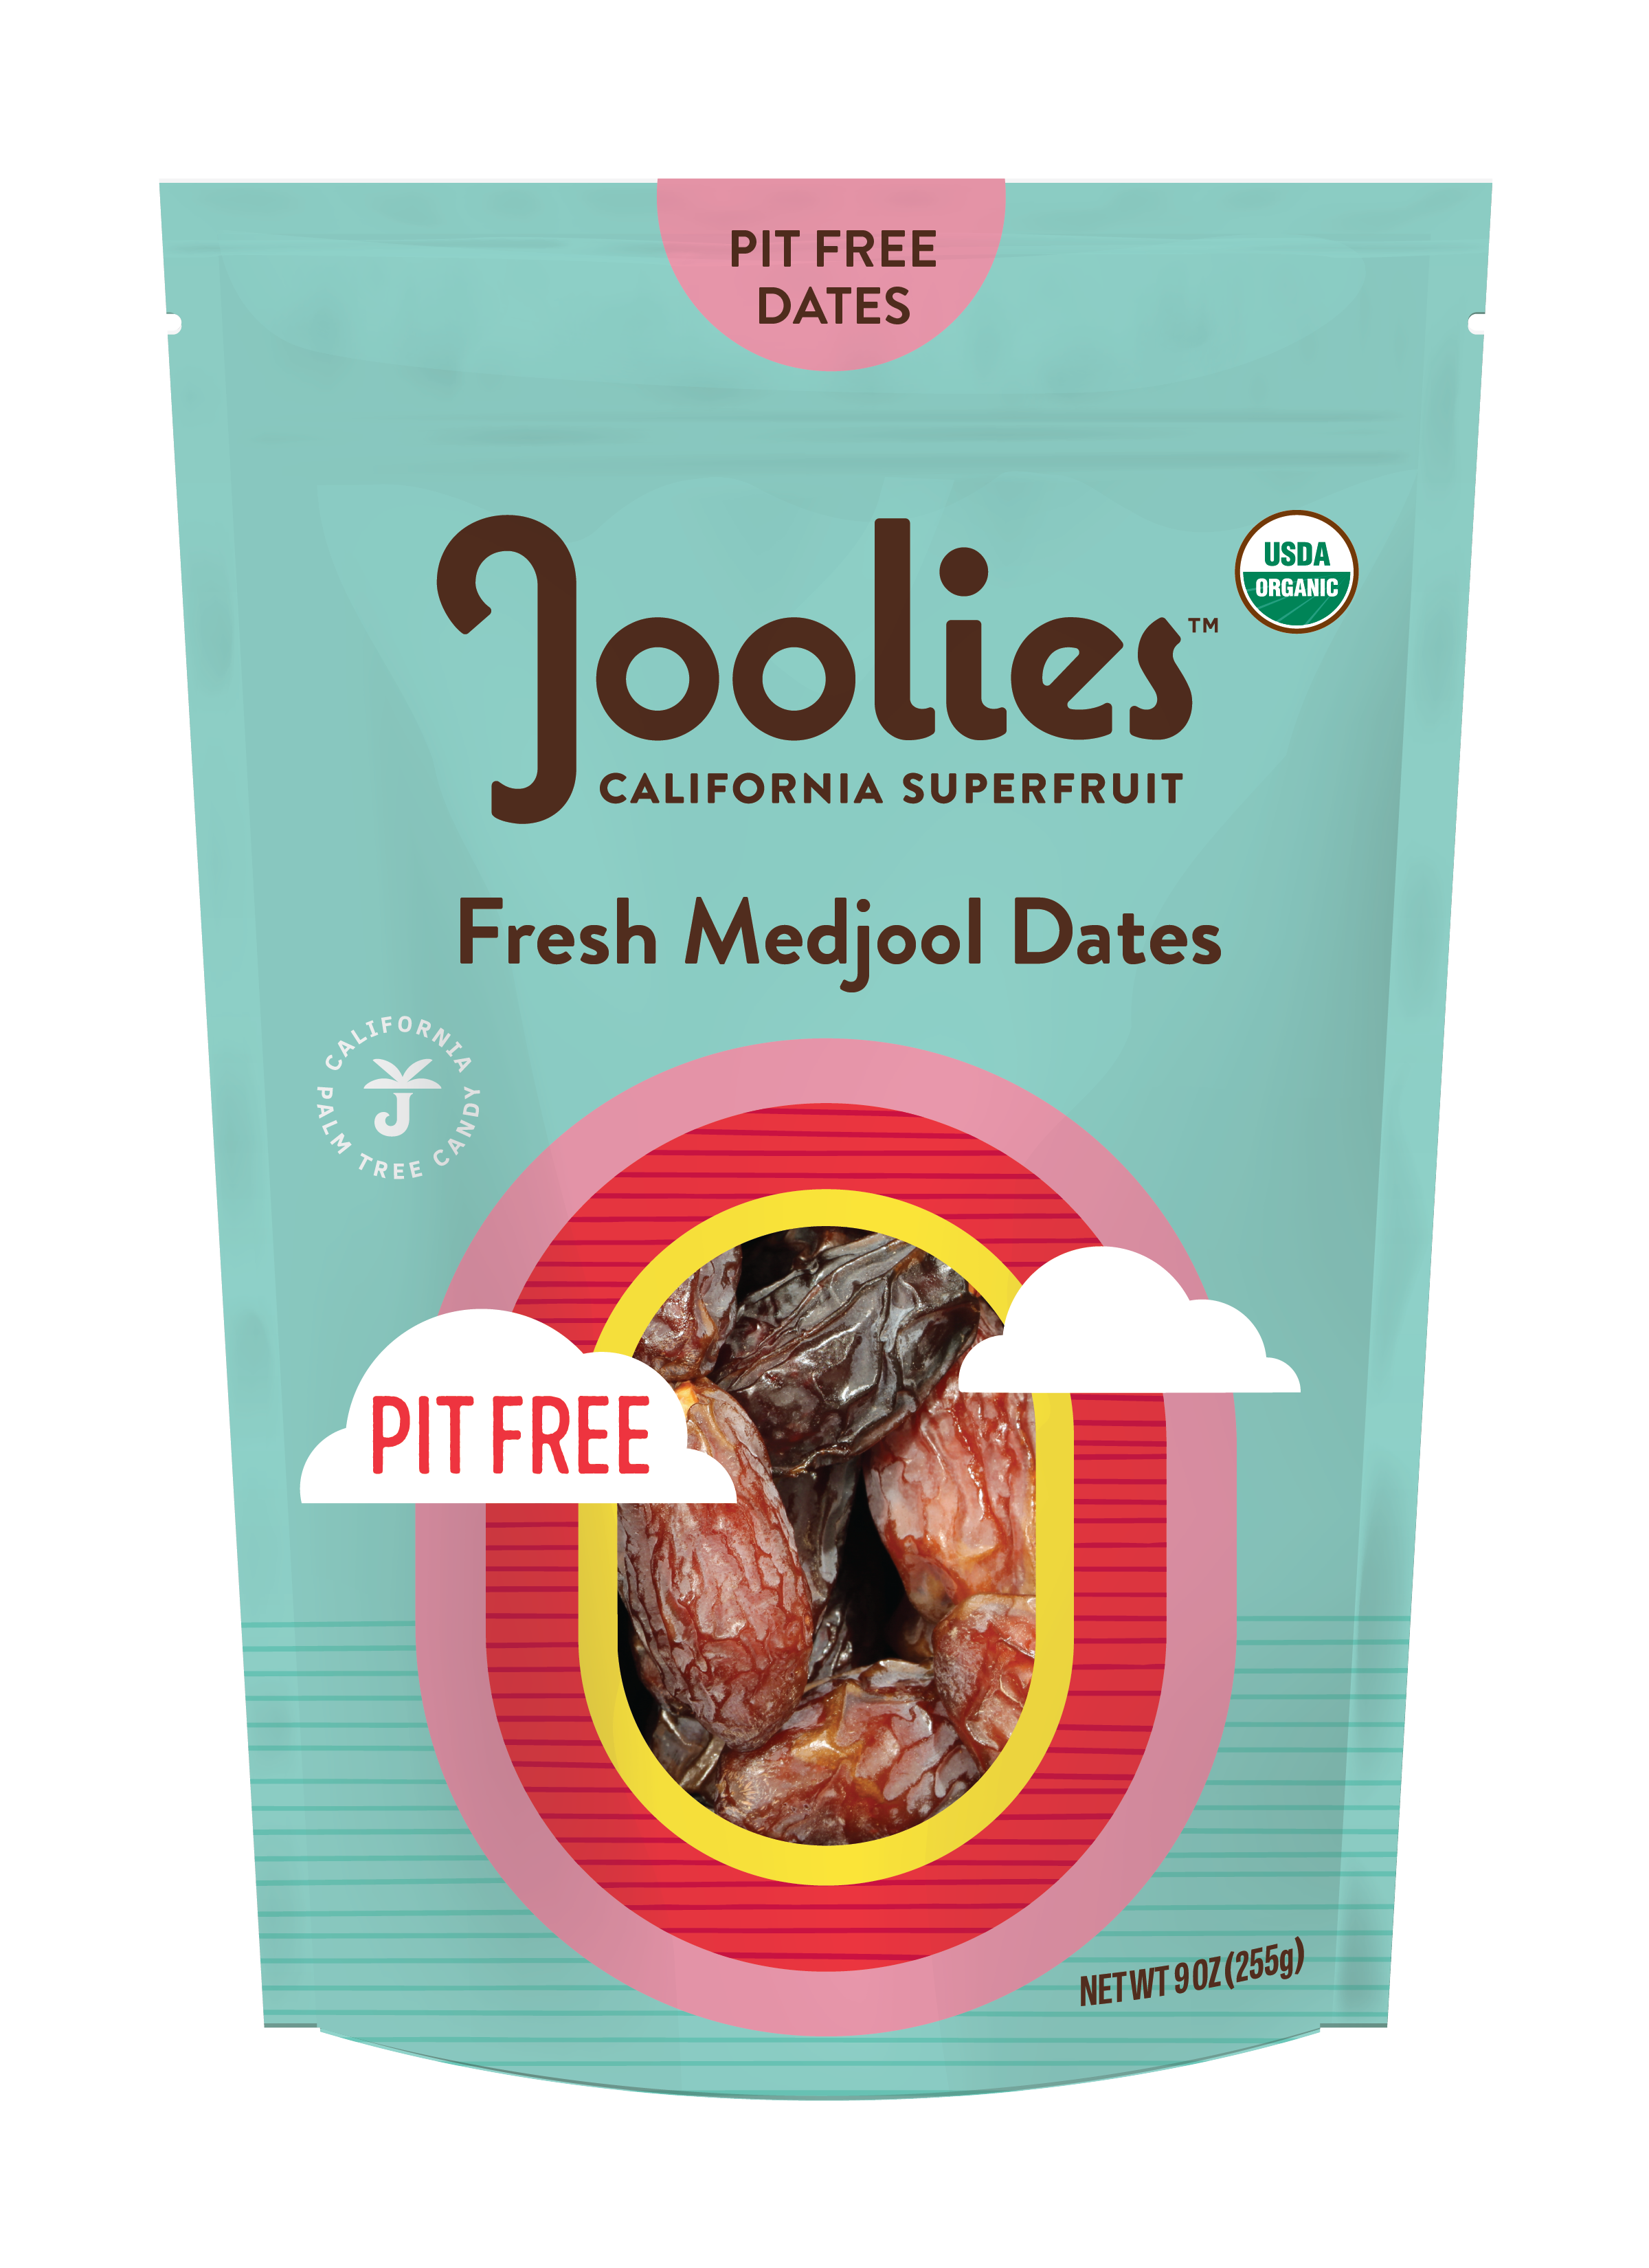 Joolies Pit Free Medjool Dates 12 units per case 9.0 oz